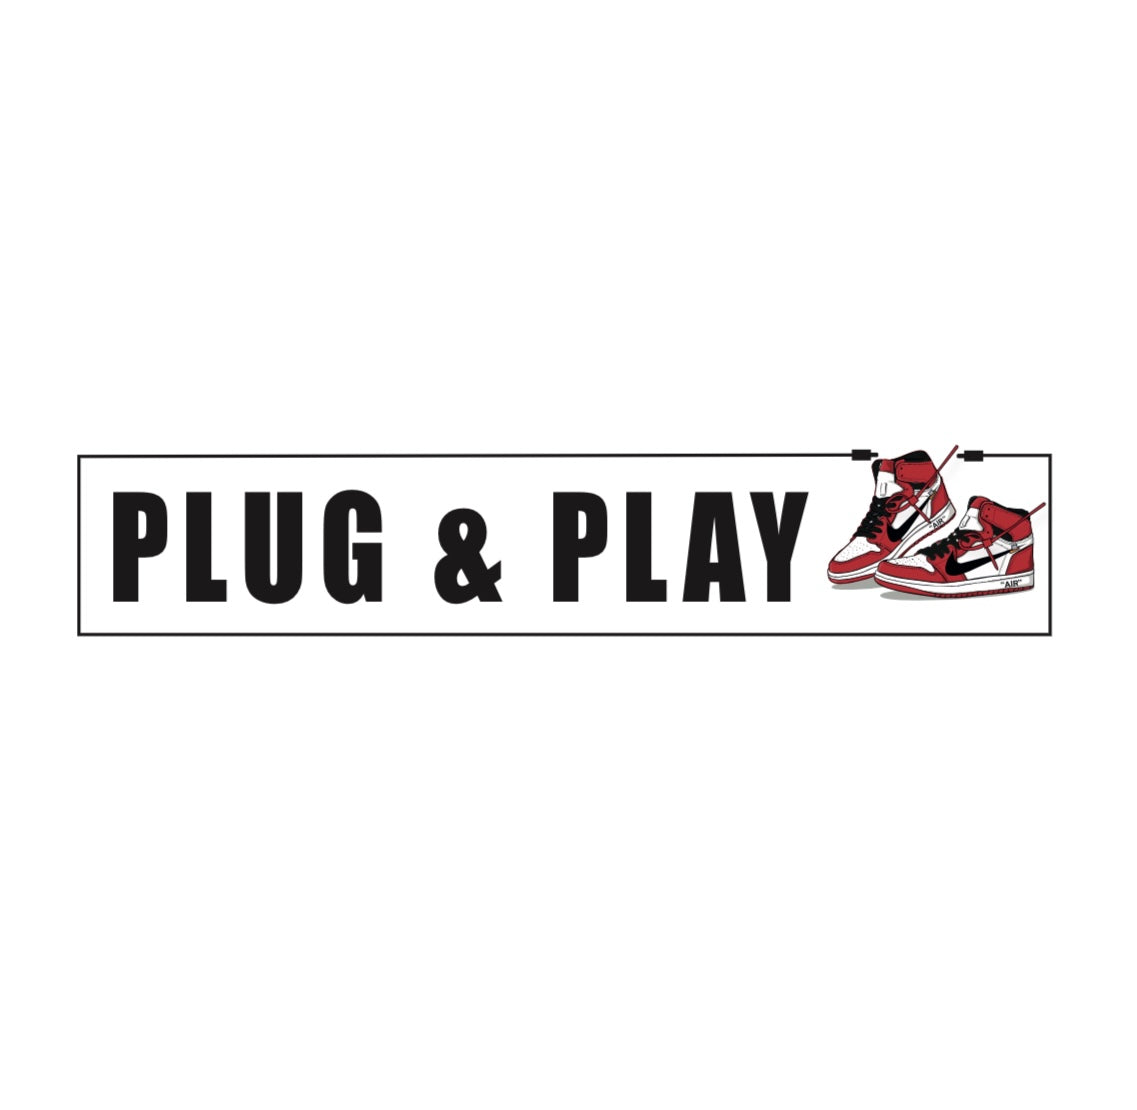 Plug & Play – Plug and Play